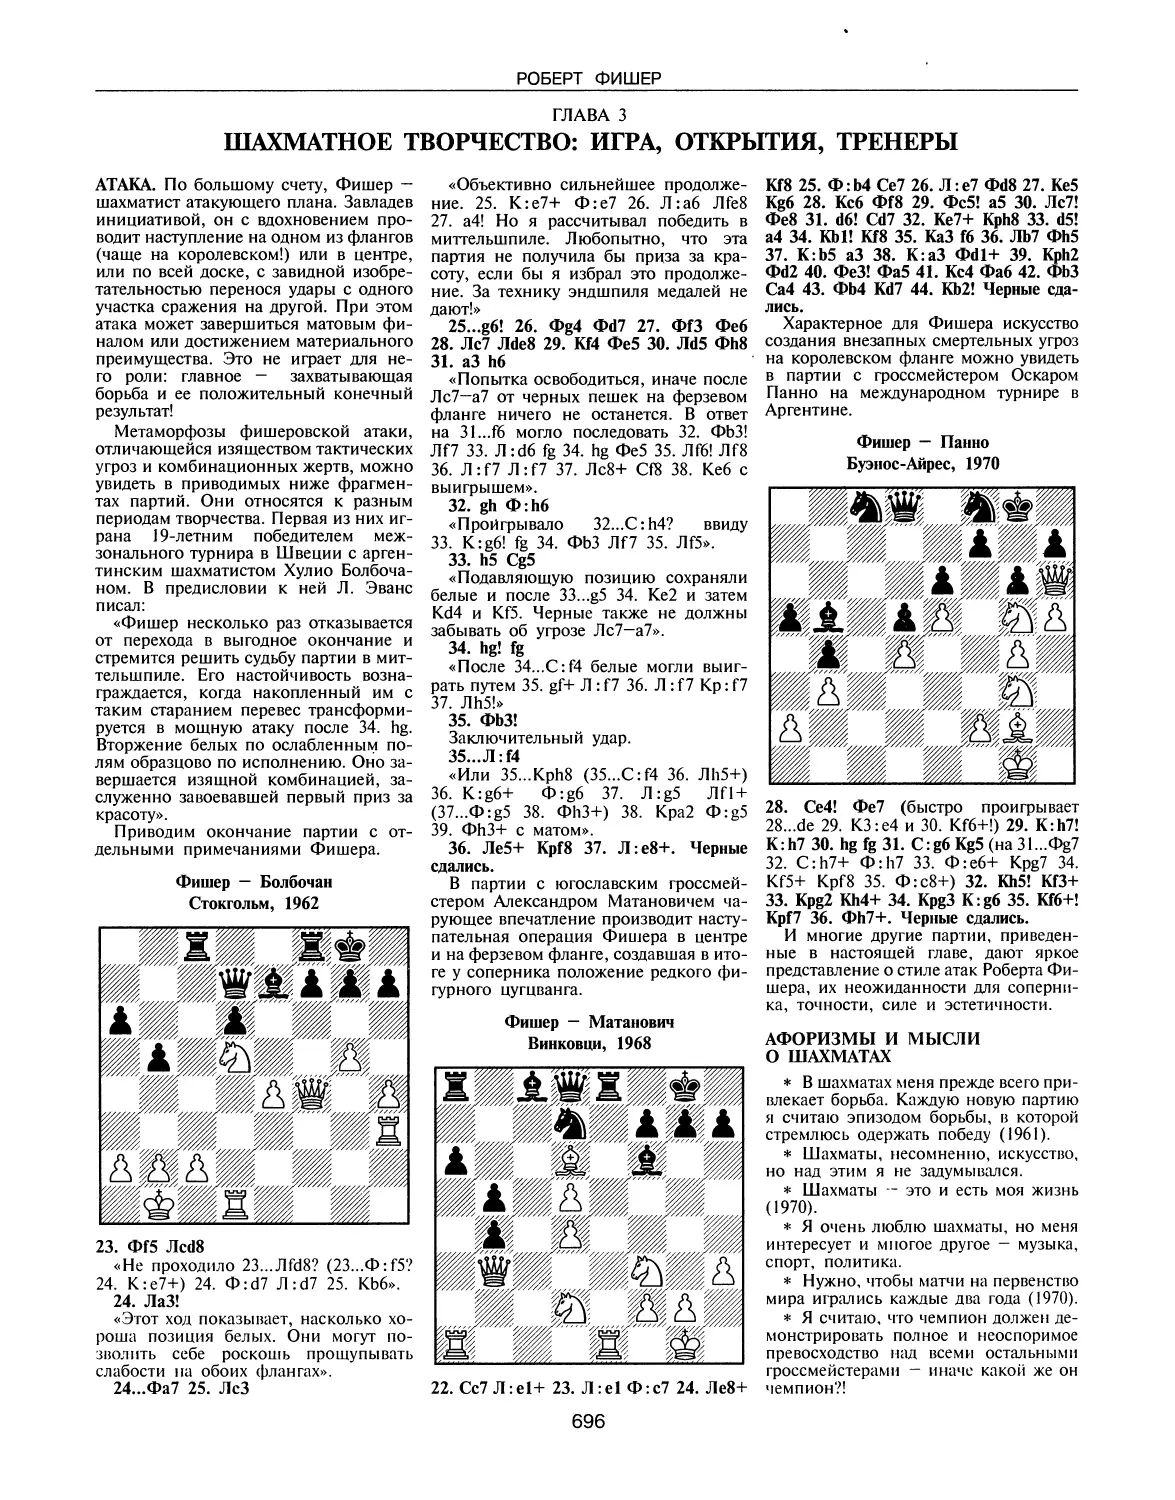 ГЛАВА 3. Шахматное творчество: игра, открытия, тренеры
Афоризмы и мысли о шахматах